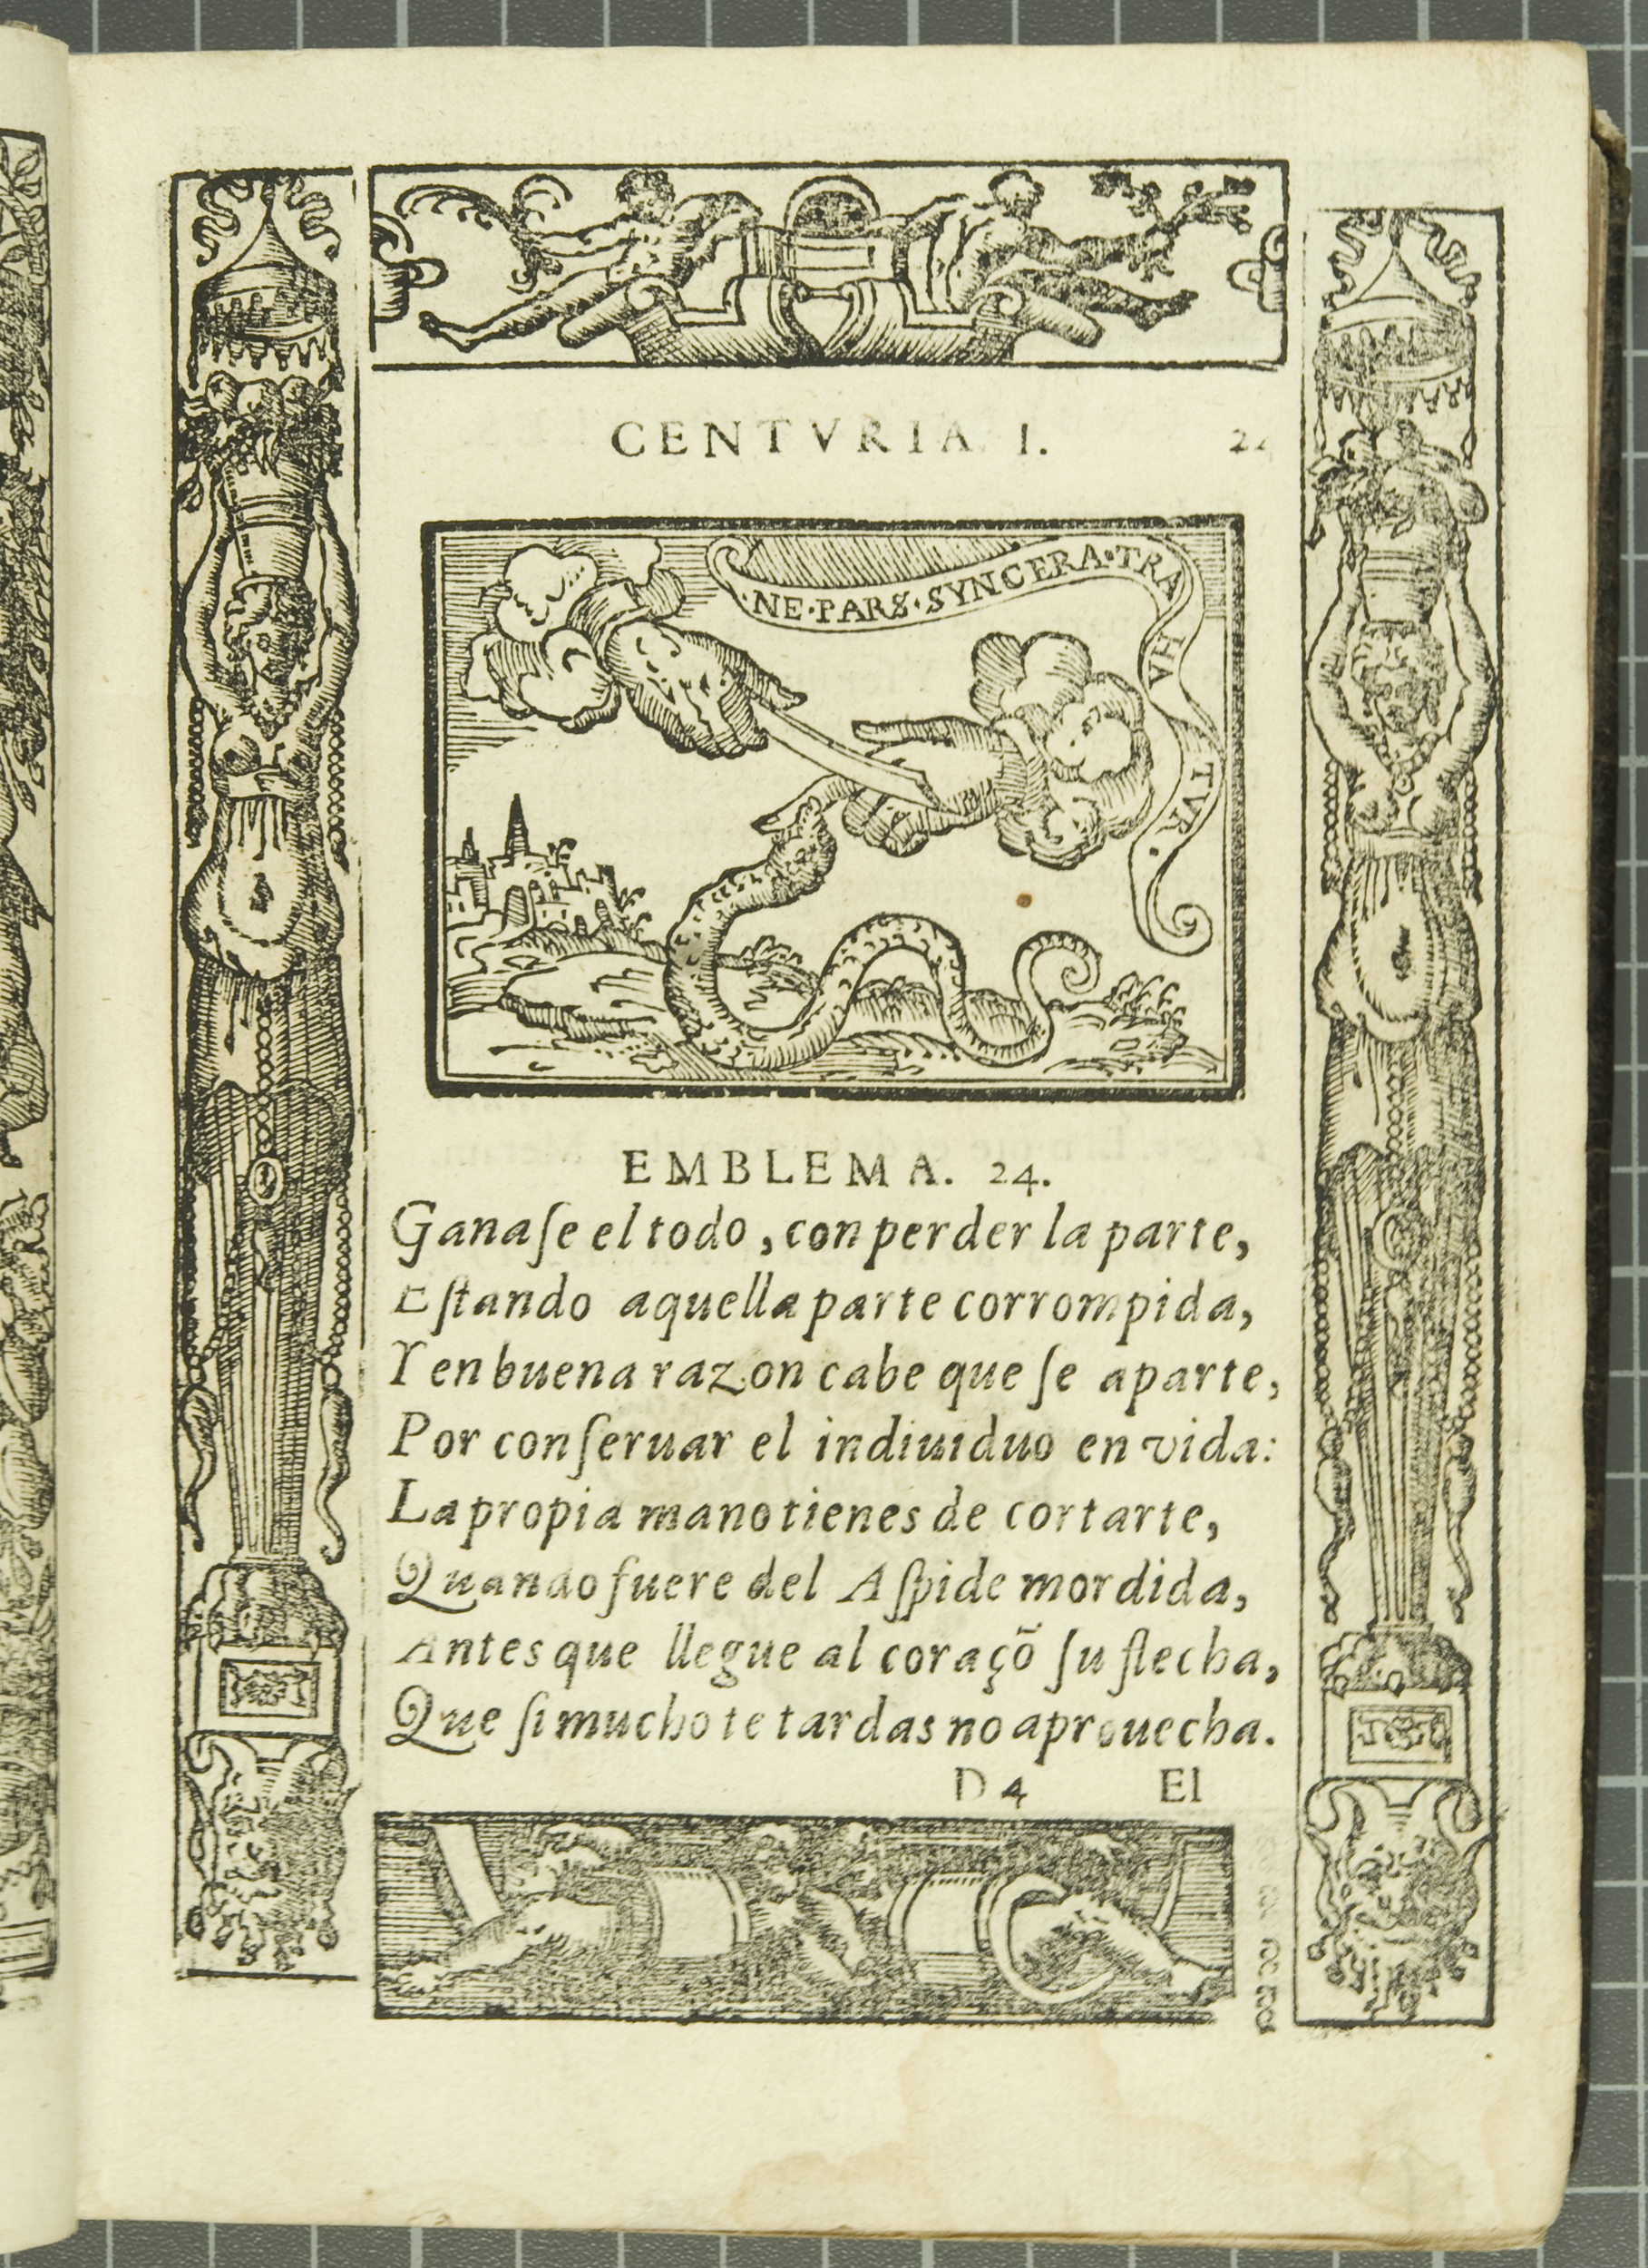 Emblem 24: "Ne pars sincera trahatur" (No pure part removed), from Covarrubias’s Emblemas morales (1610).